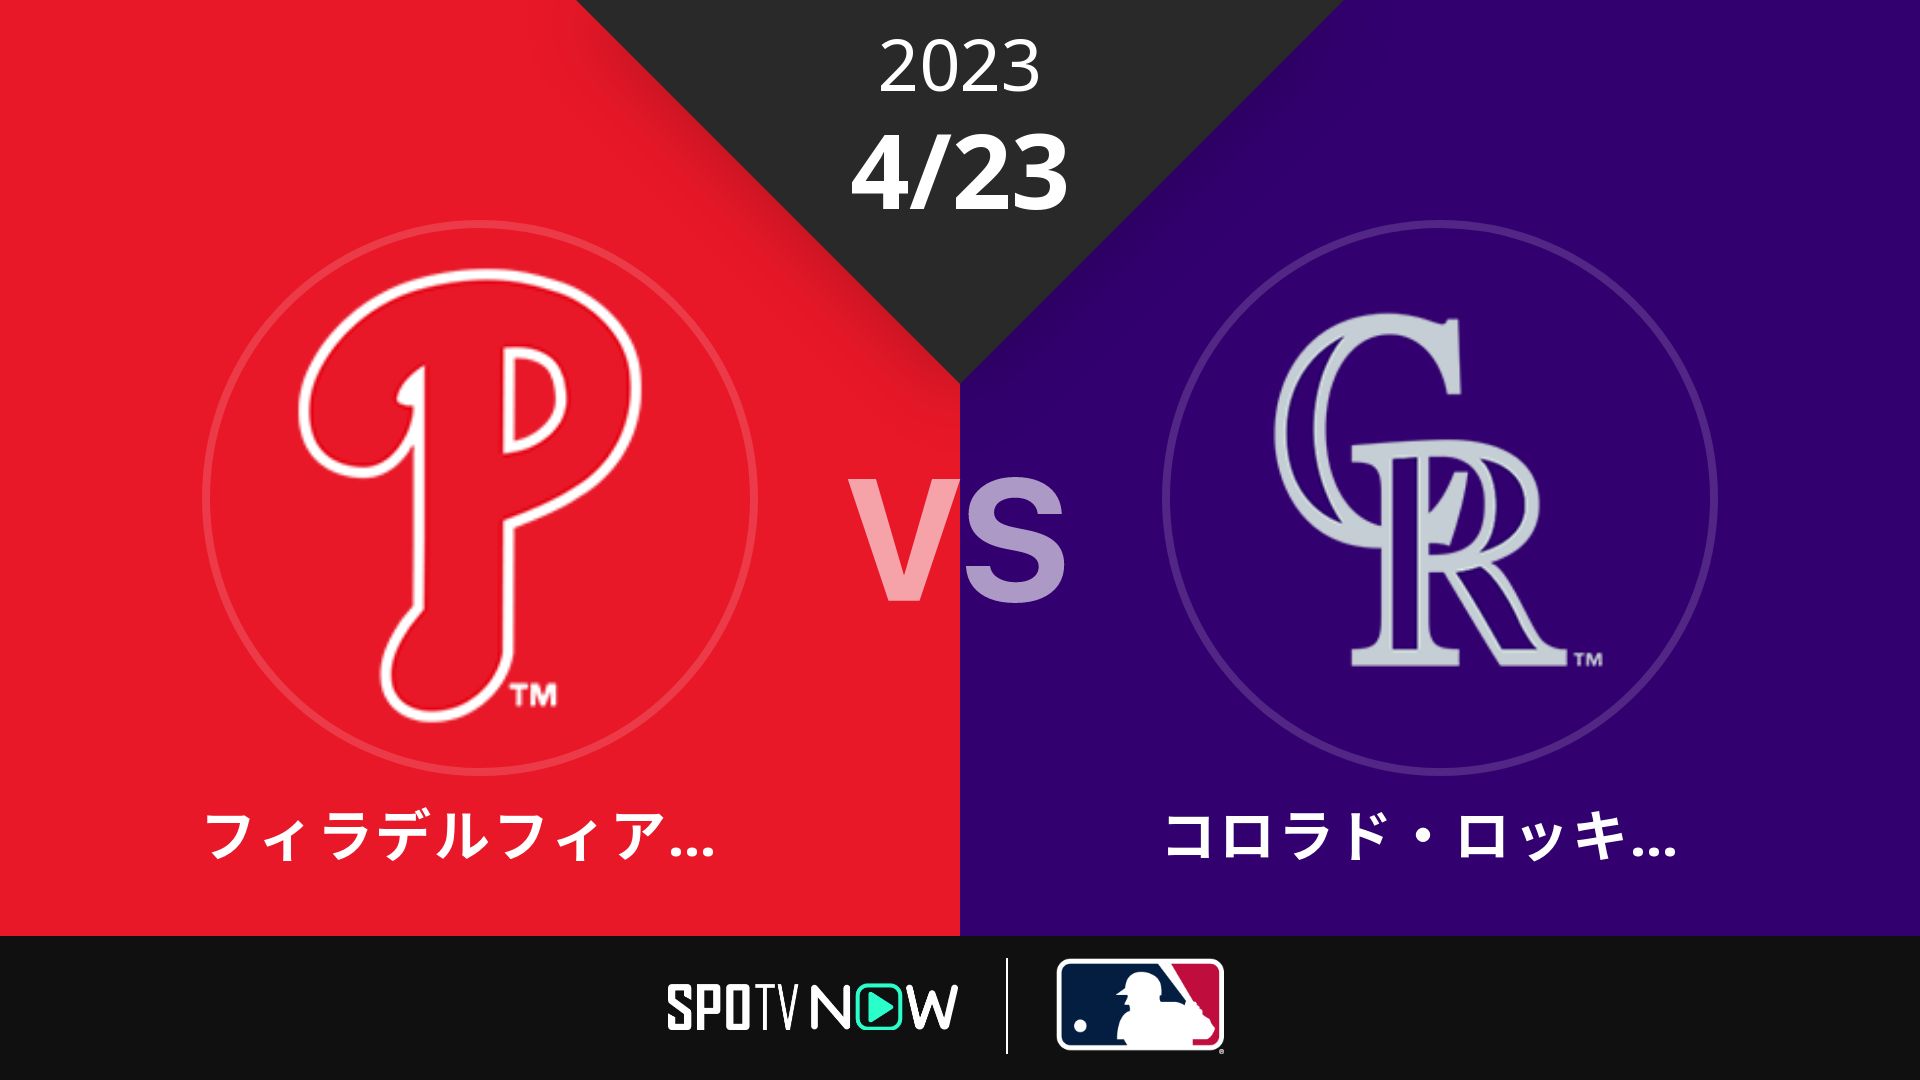 2023/4/23 フィリーズ vs ロッキーズ [MLB]